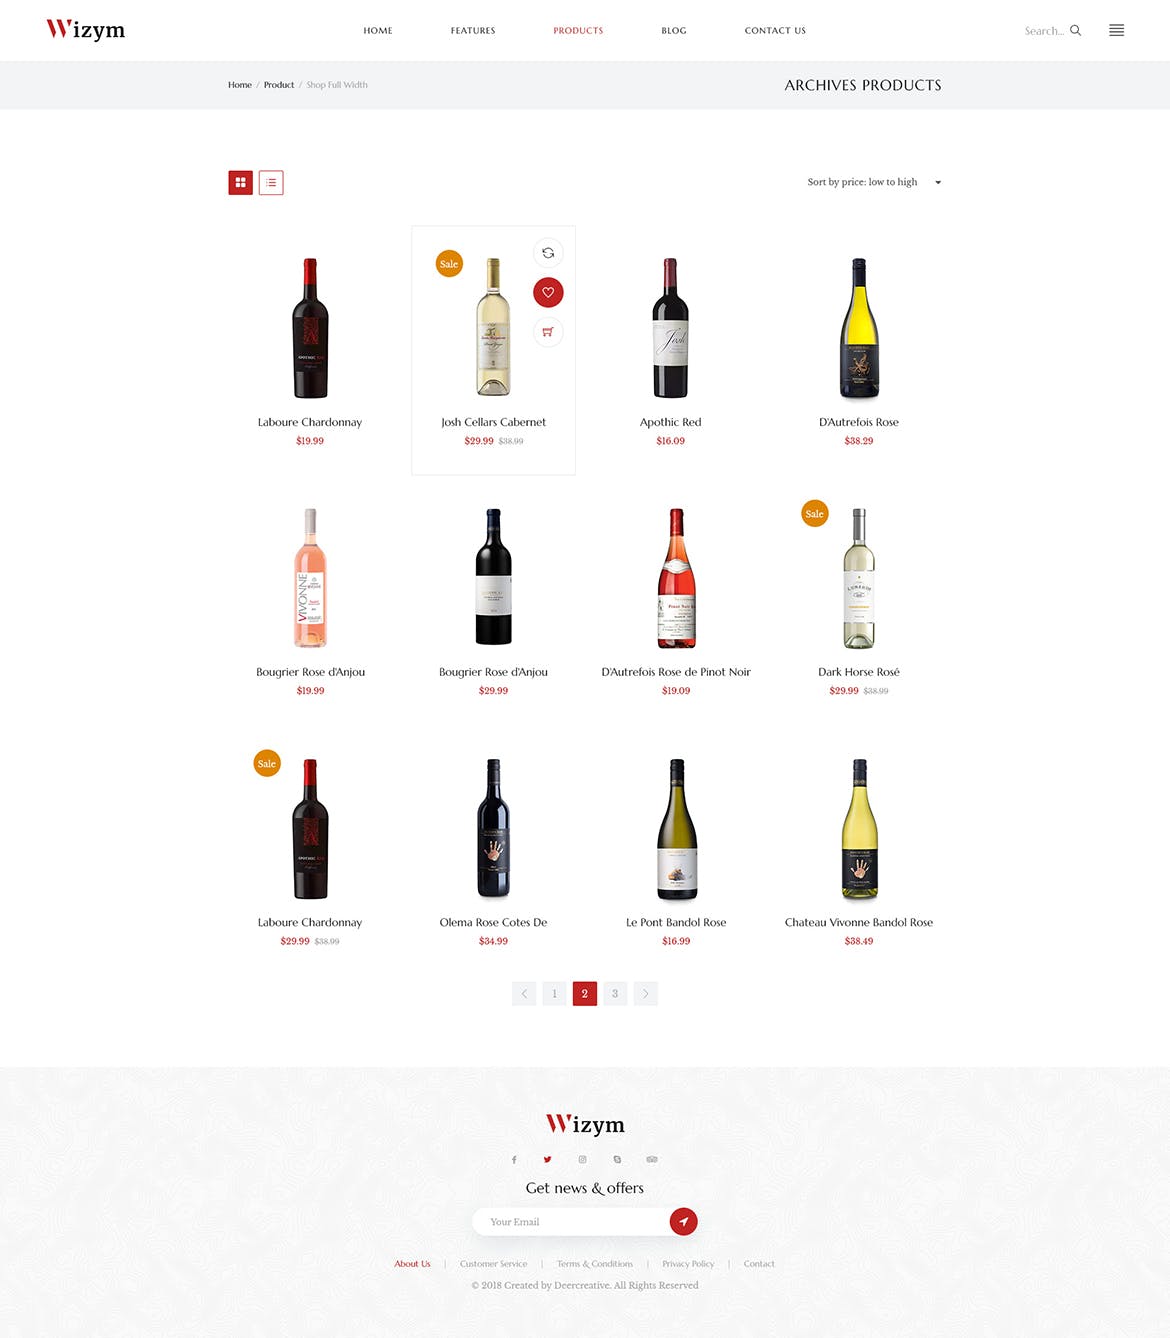 葡萄酒品牌网站设计PSD模板 Wizym | Wine & Winery PSD Template插图(3)